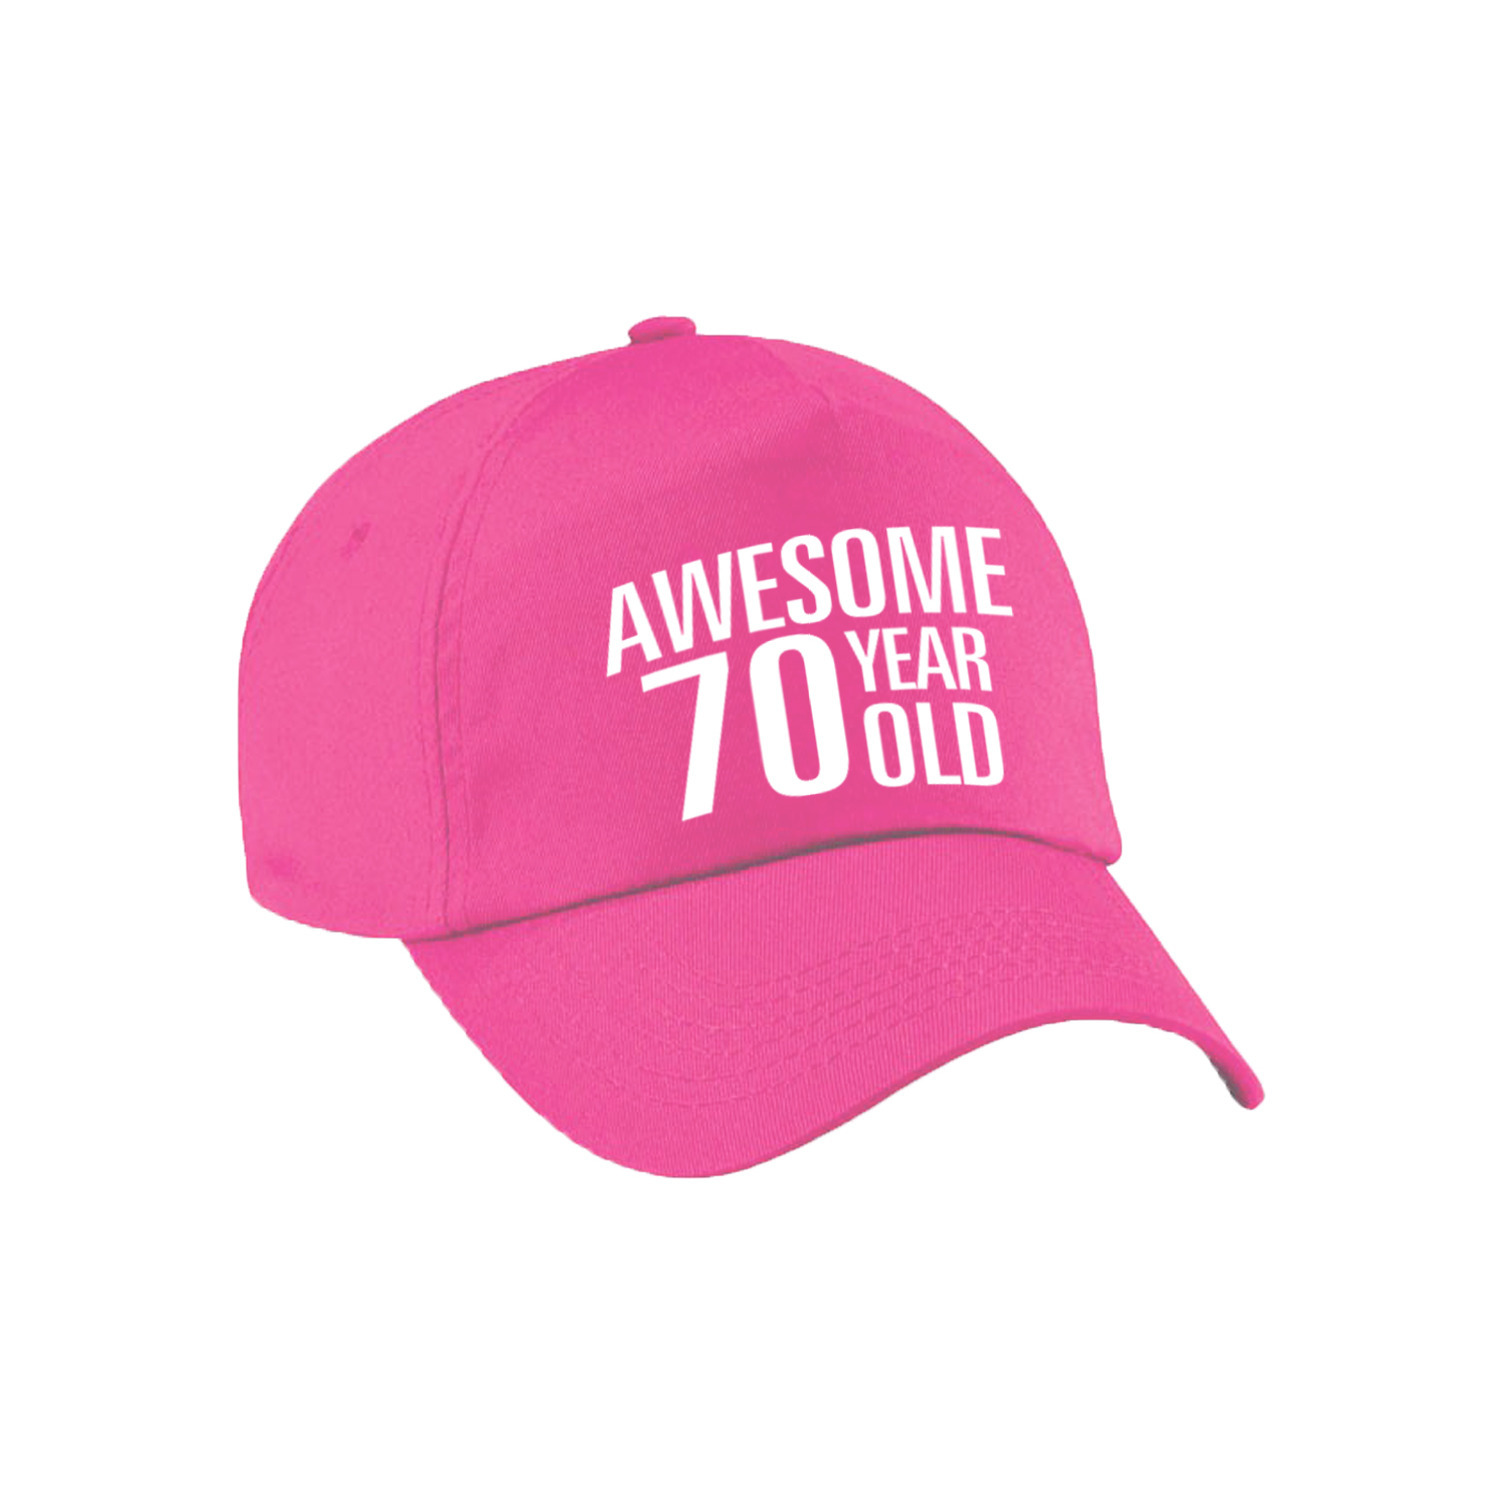 Awesome 70 year old verjaardag pet / cap roze voor dames en heren